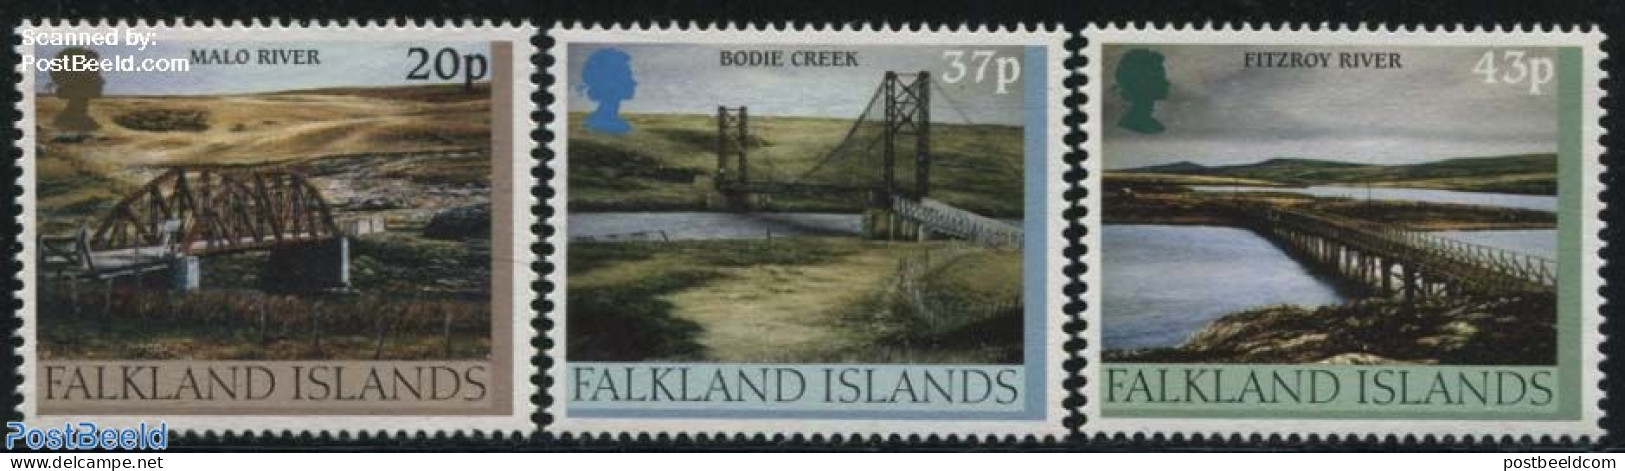 Falkland Islands 2000 Bridges 3v, Mint NH, Art - Bridges And Tunnels - Ponts